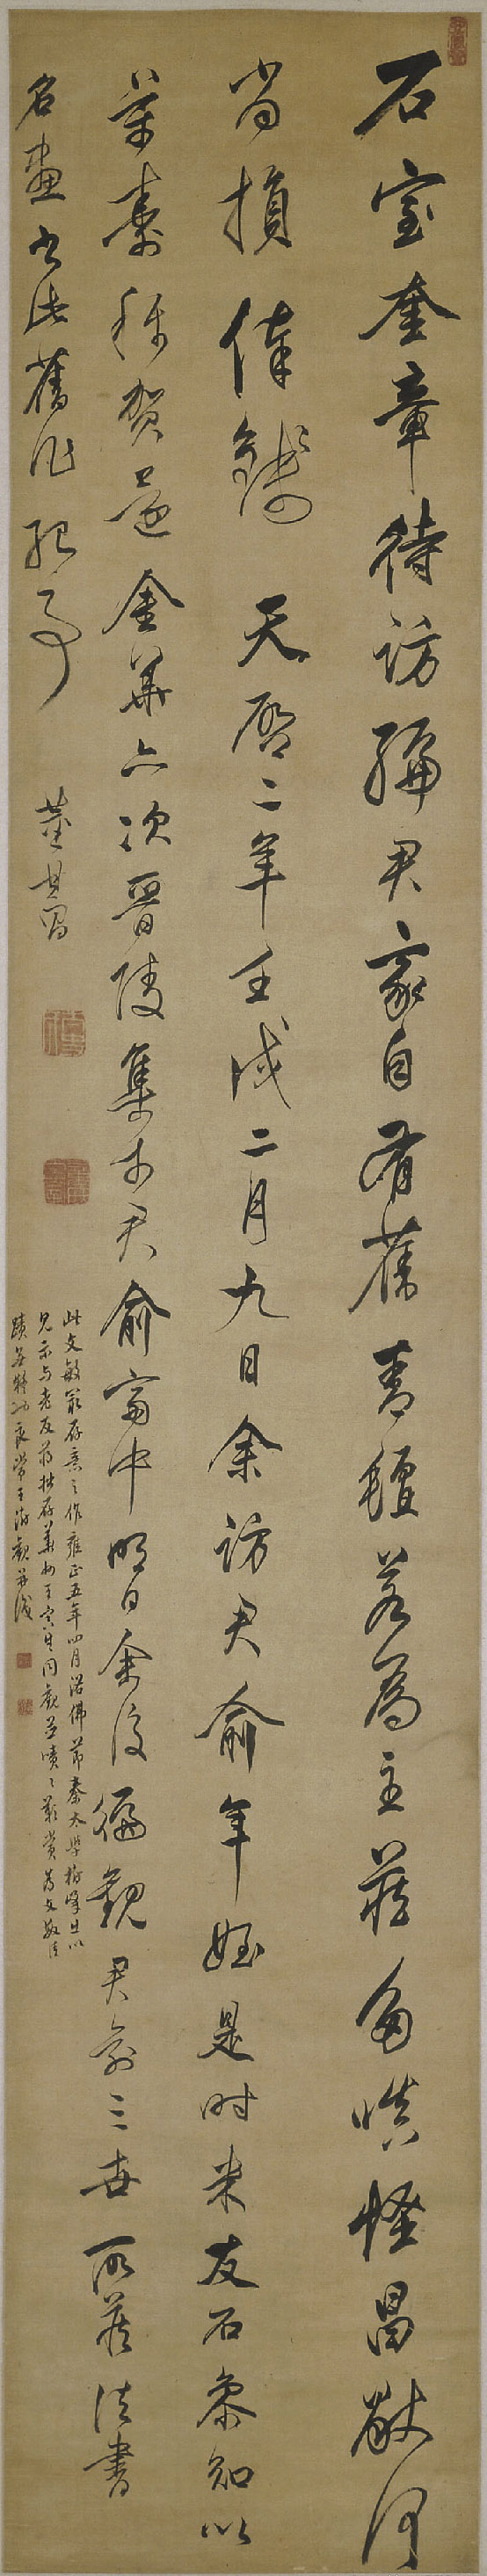 董其昌行书《自书七绝诗轴》轴-北京故宫博物院藏(图1)